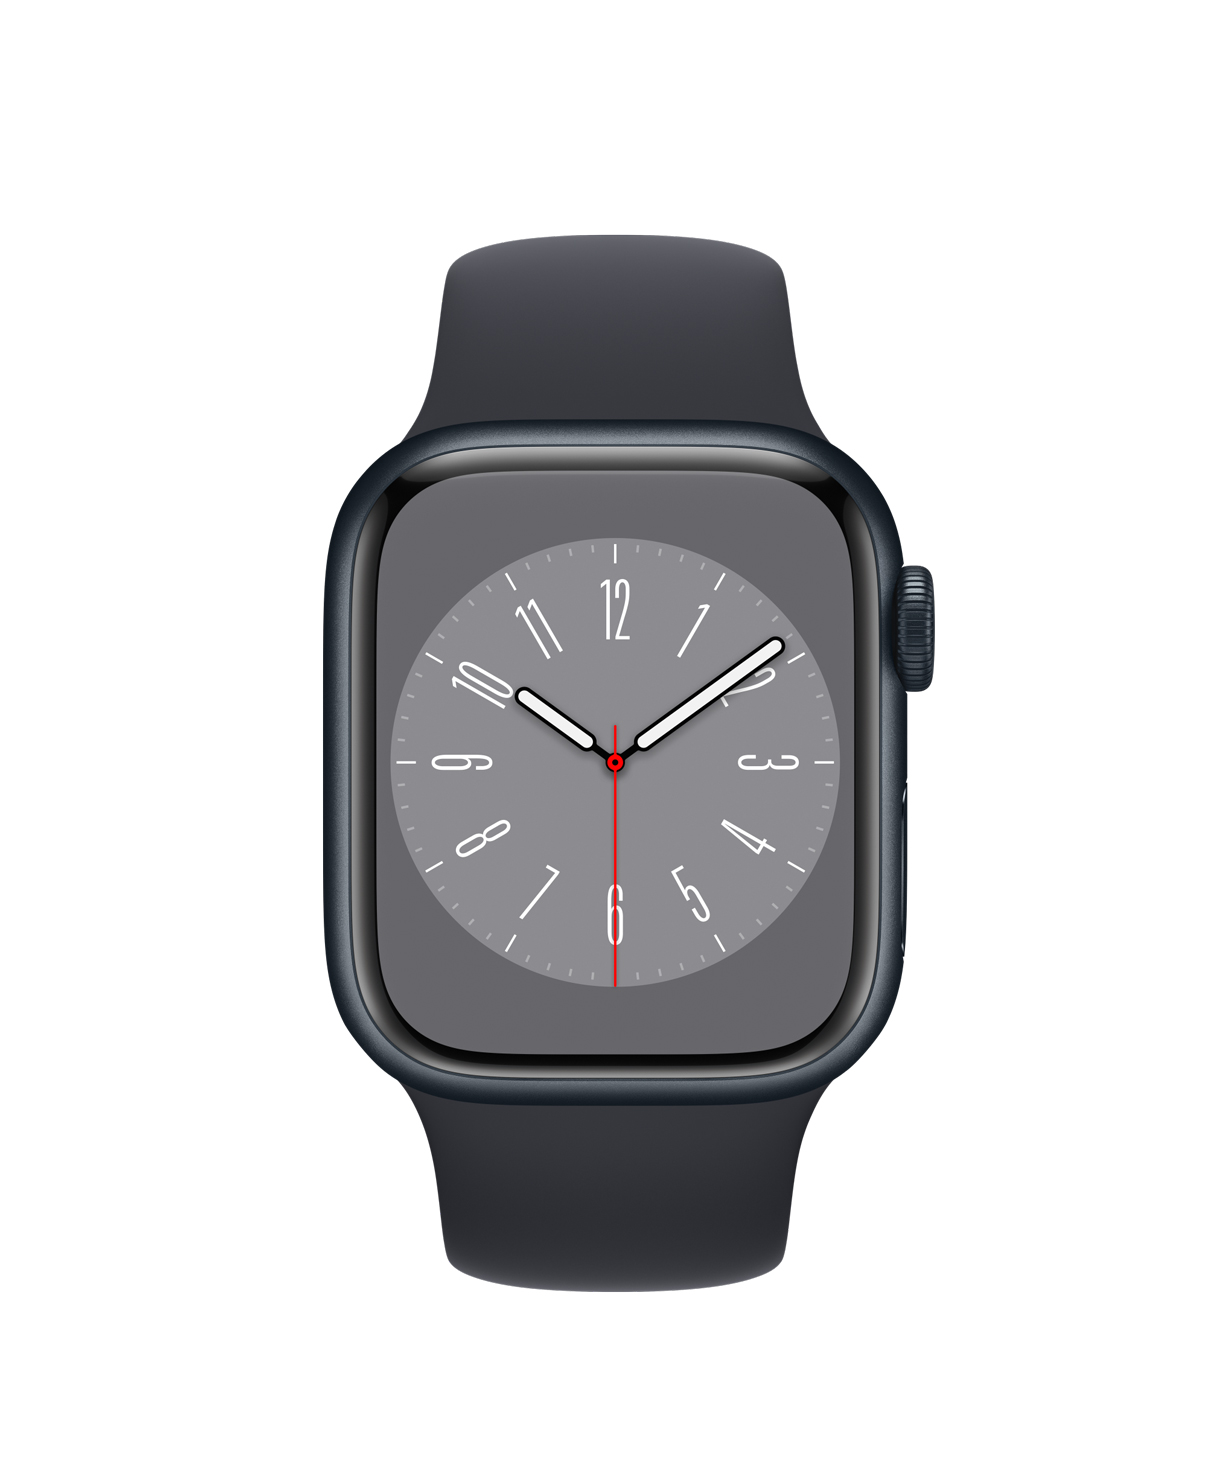 Smart watch «Apple» 8, 41mm